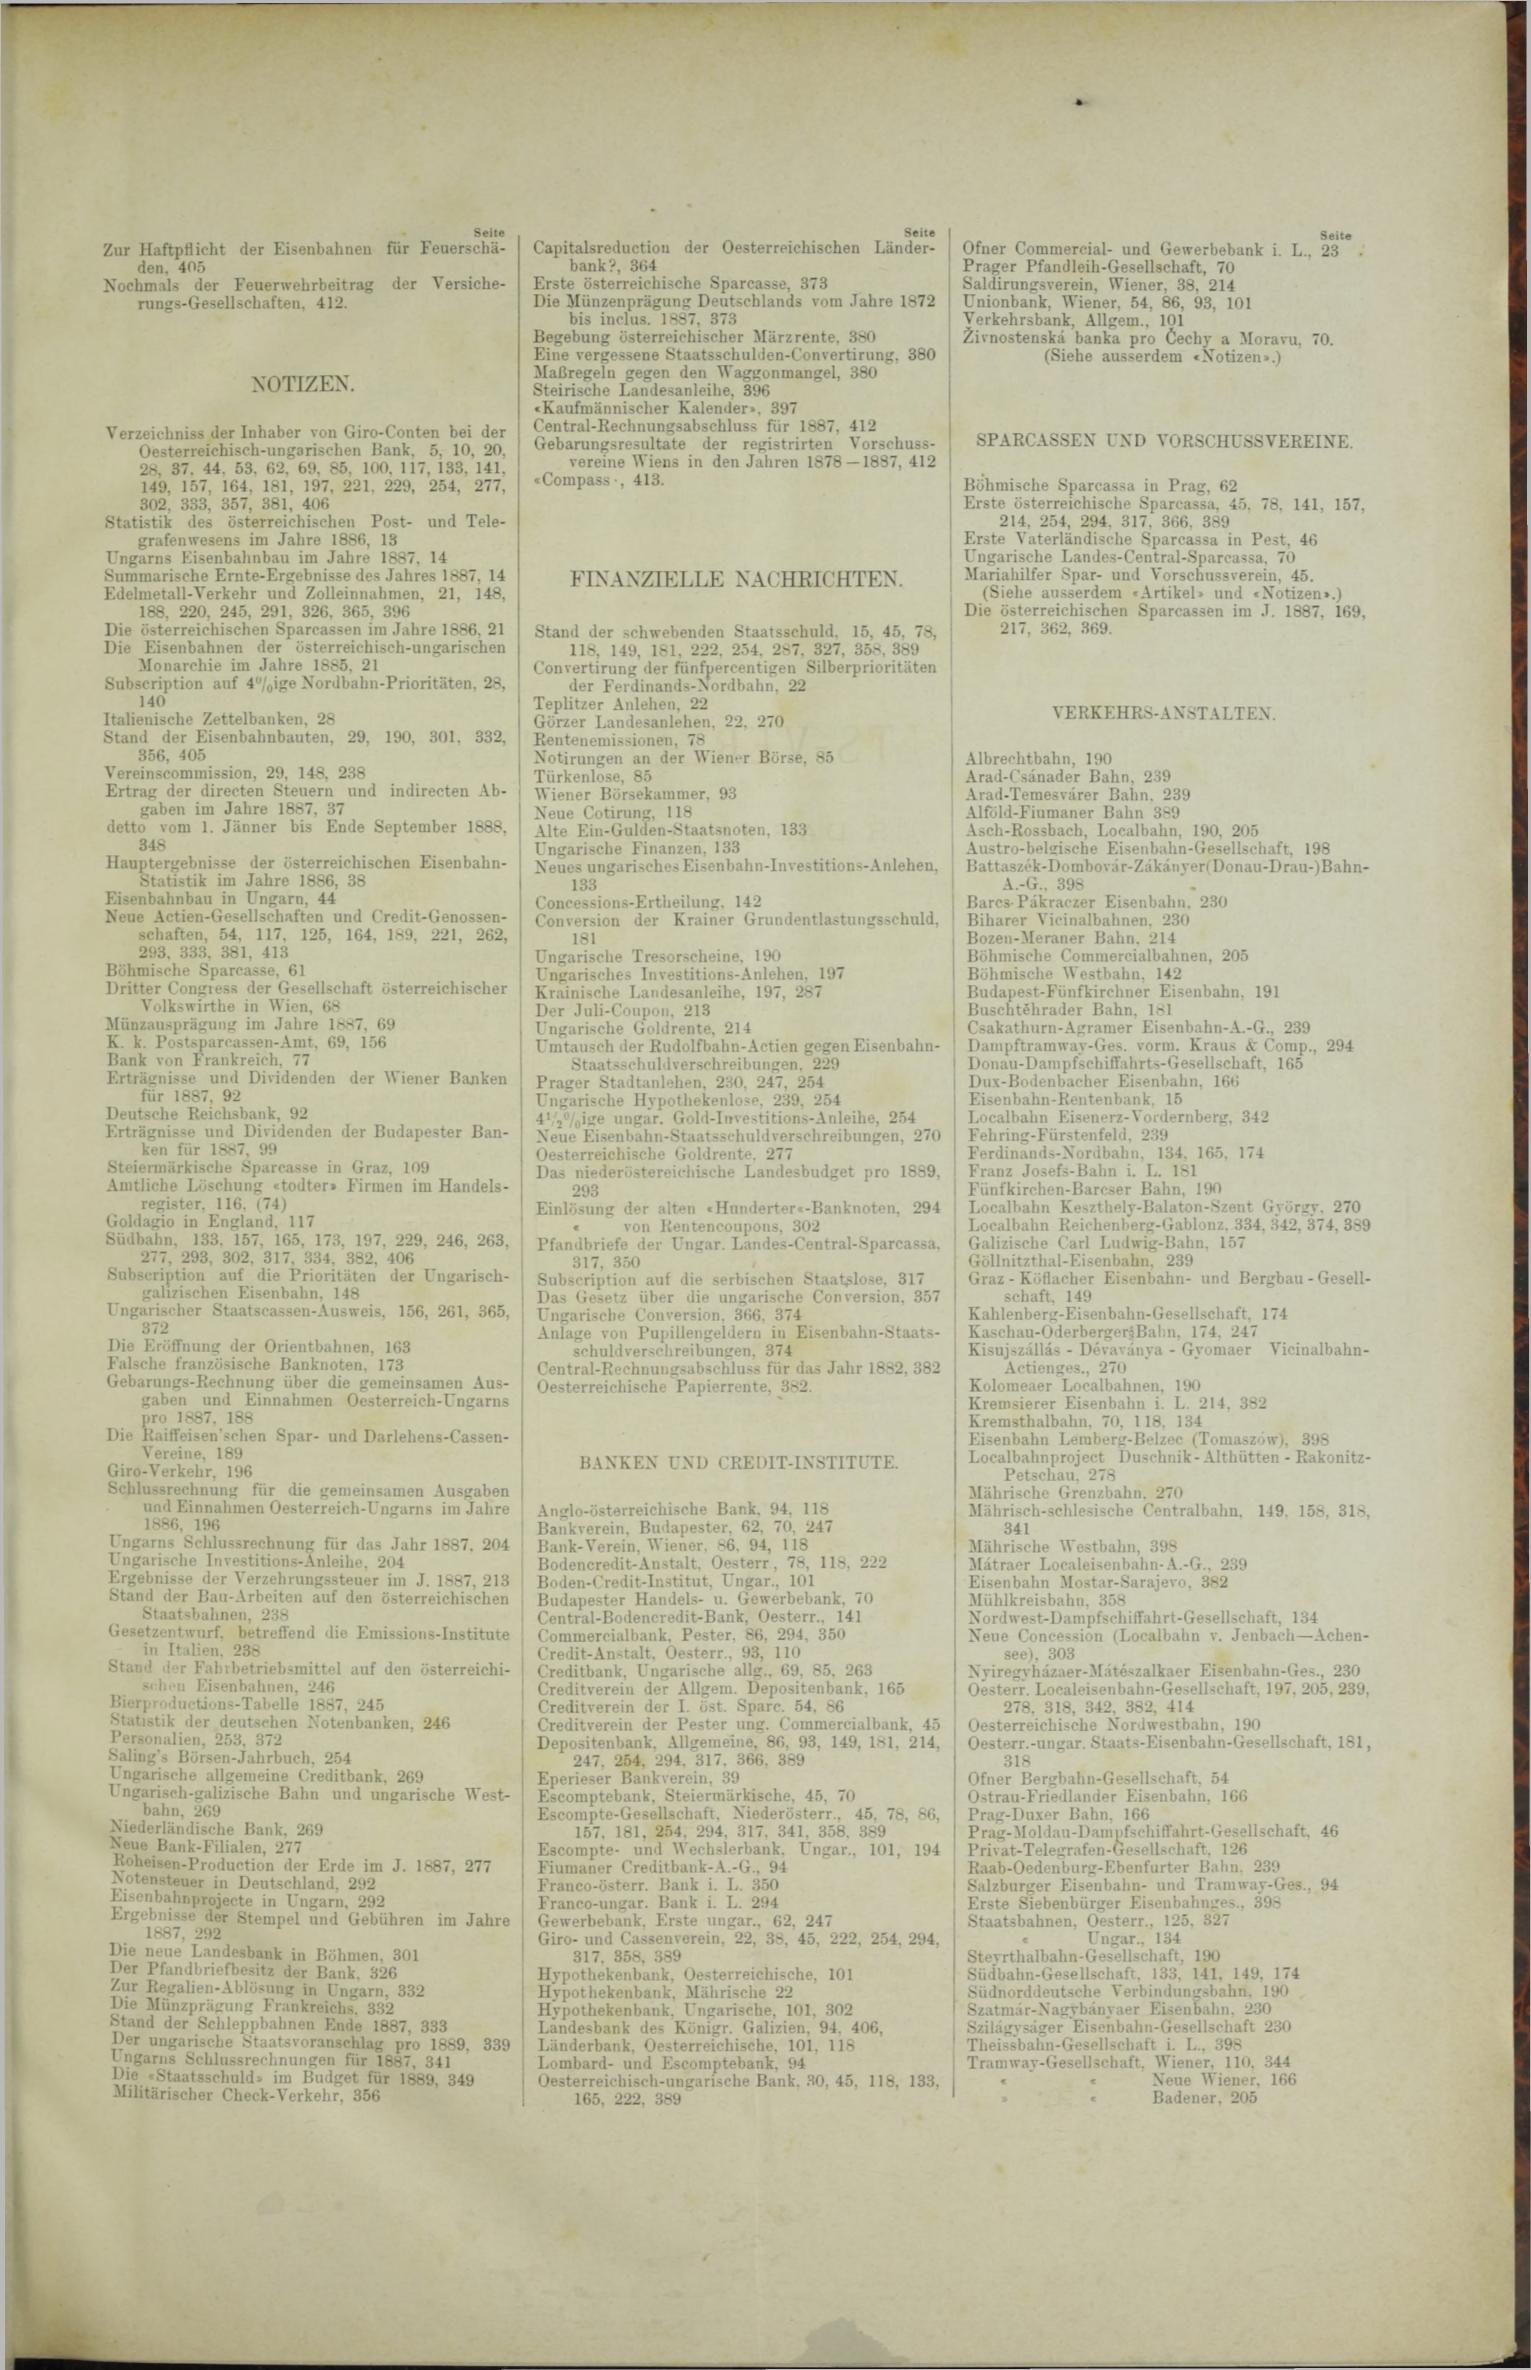 Der Tresor 05.07.1888 - Seite 11